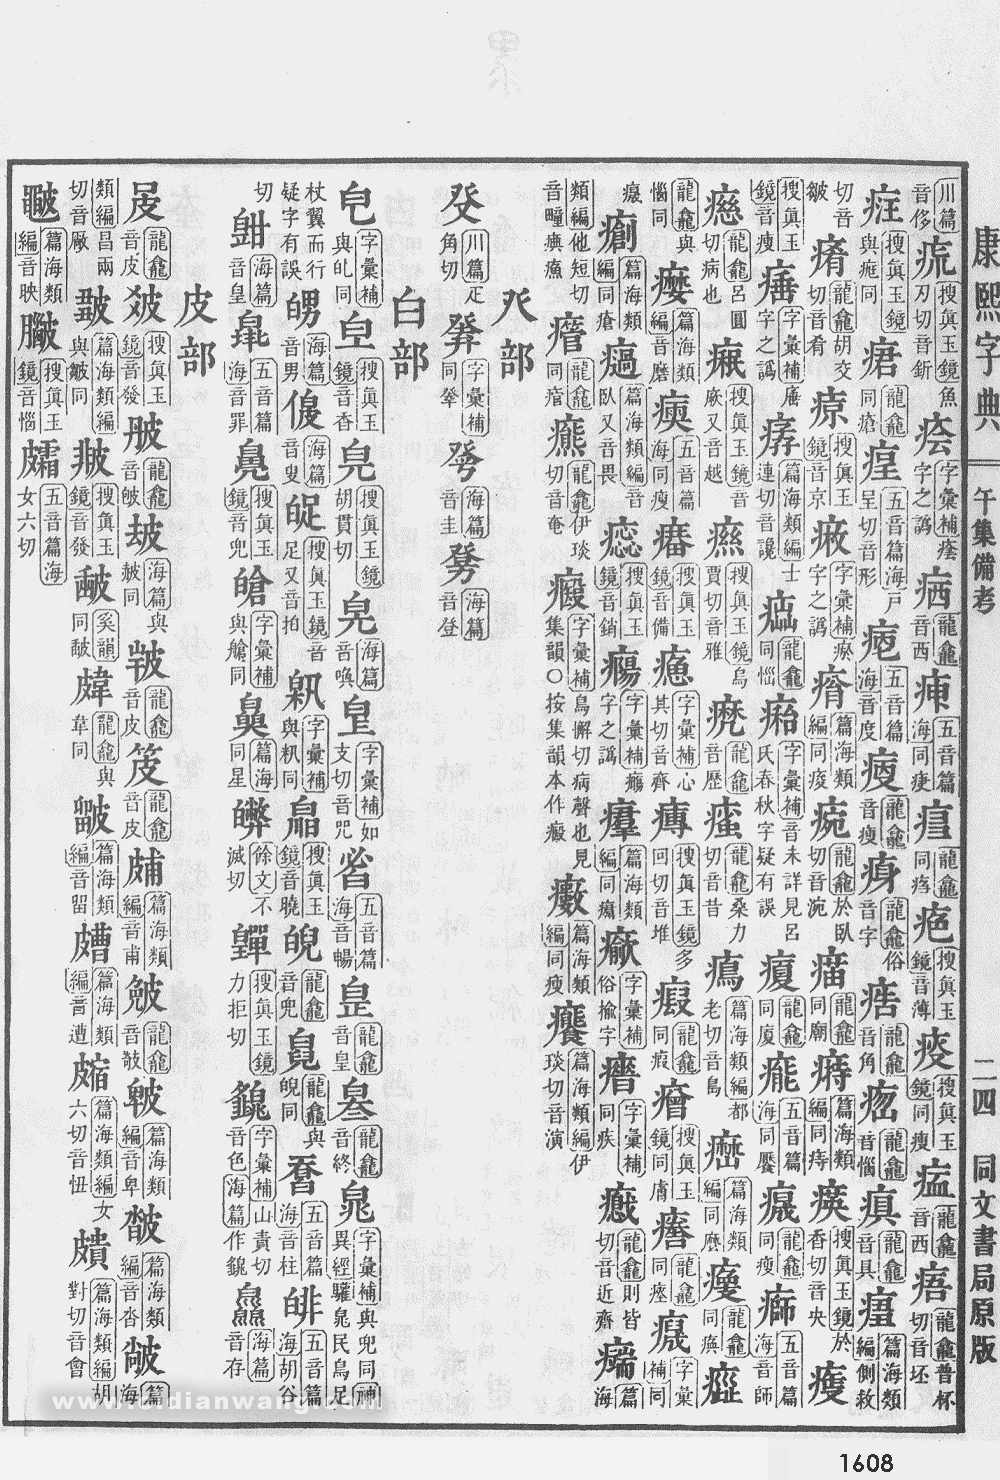 康熙字典掃描版第1608頁